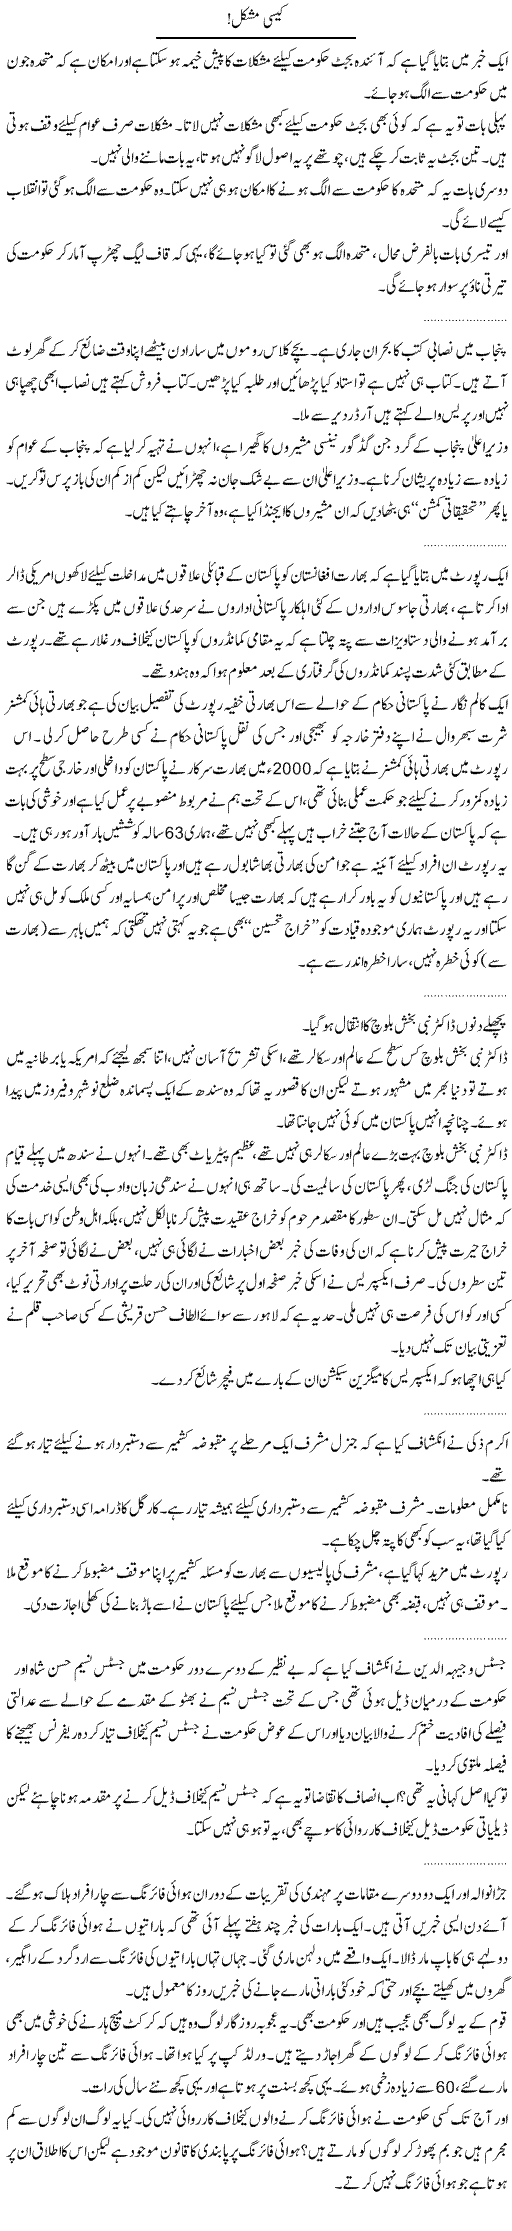 Big News Express Column Abdullah Tariq 13 April 2011